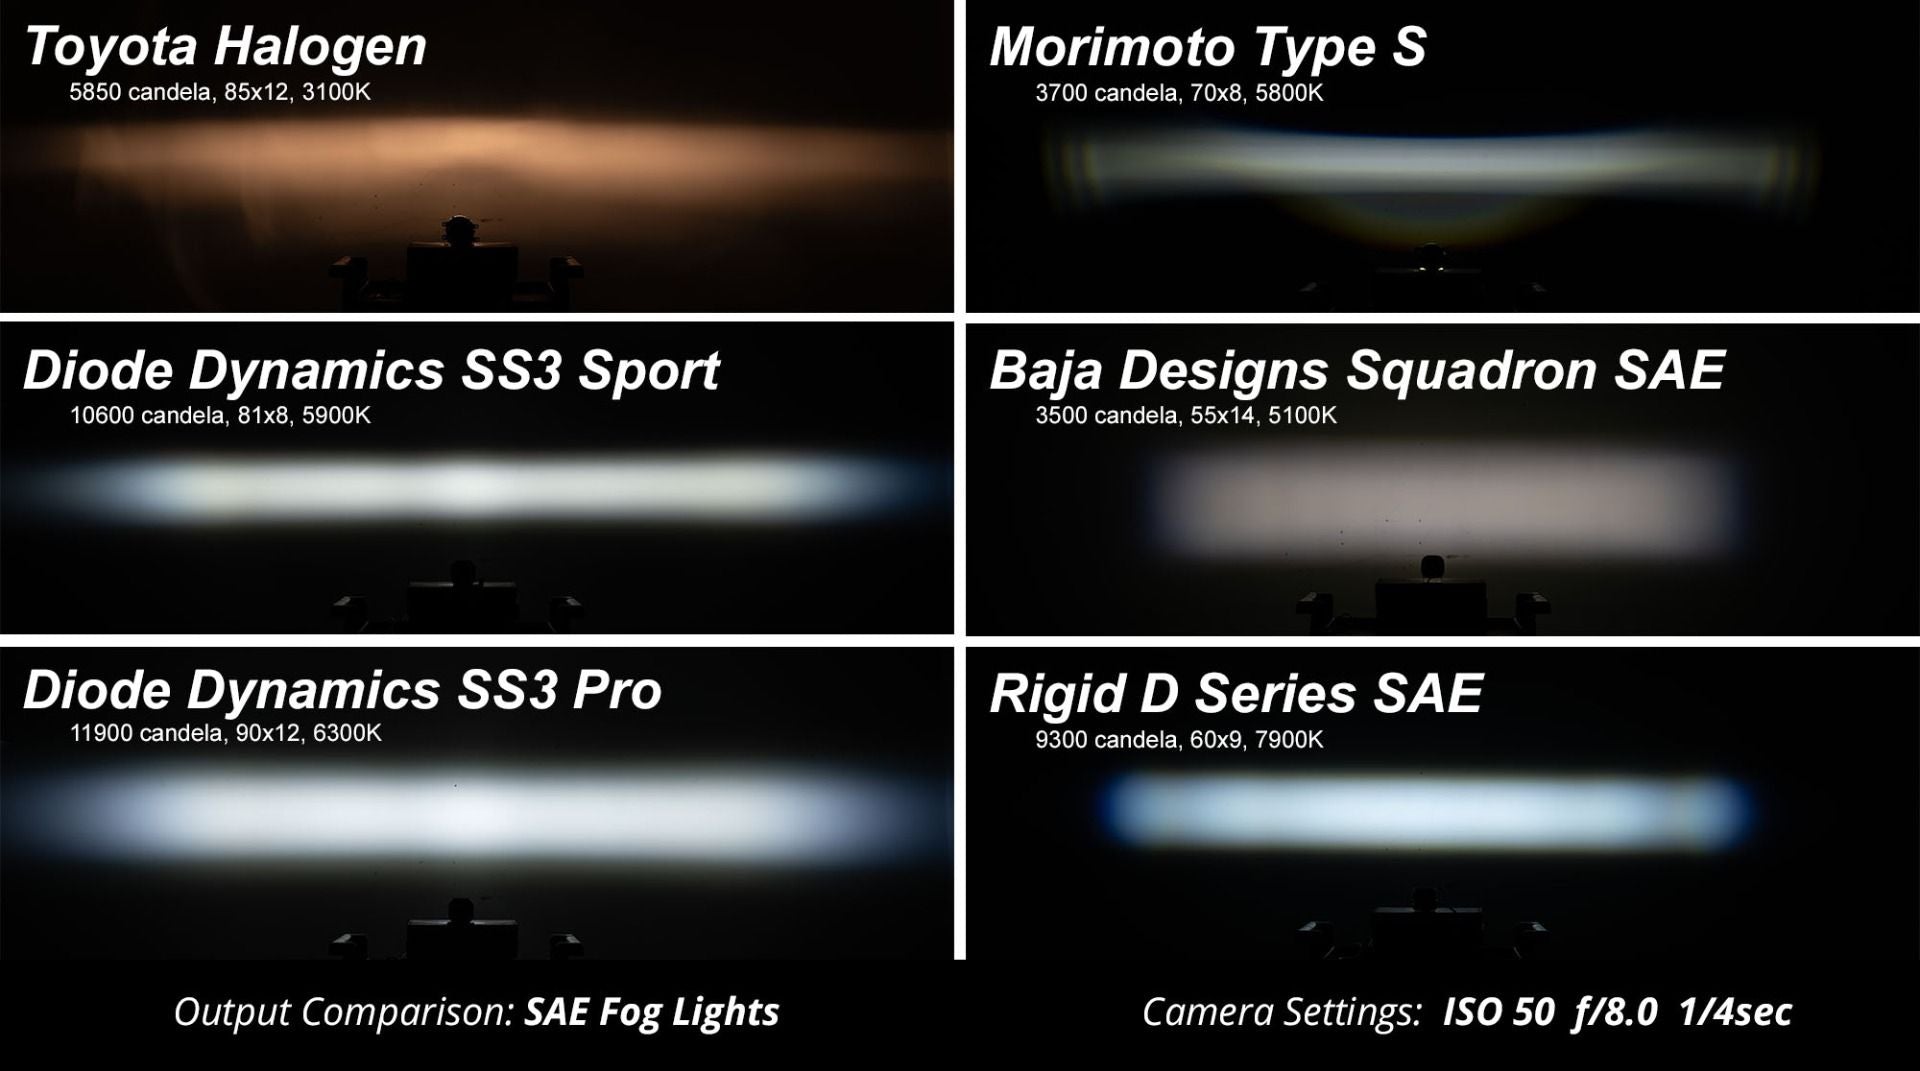 SS3 LED Fog Light Kit for 2007-2014 Chevrolet Suburban